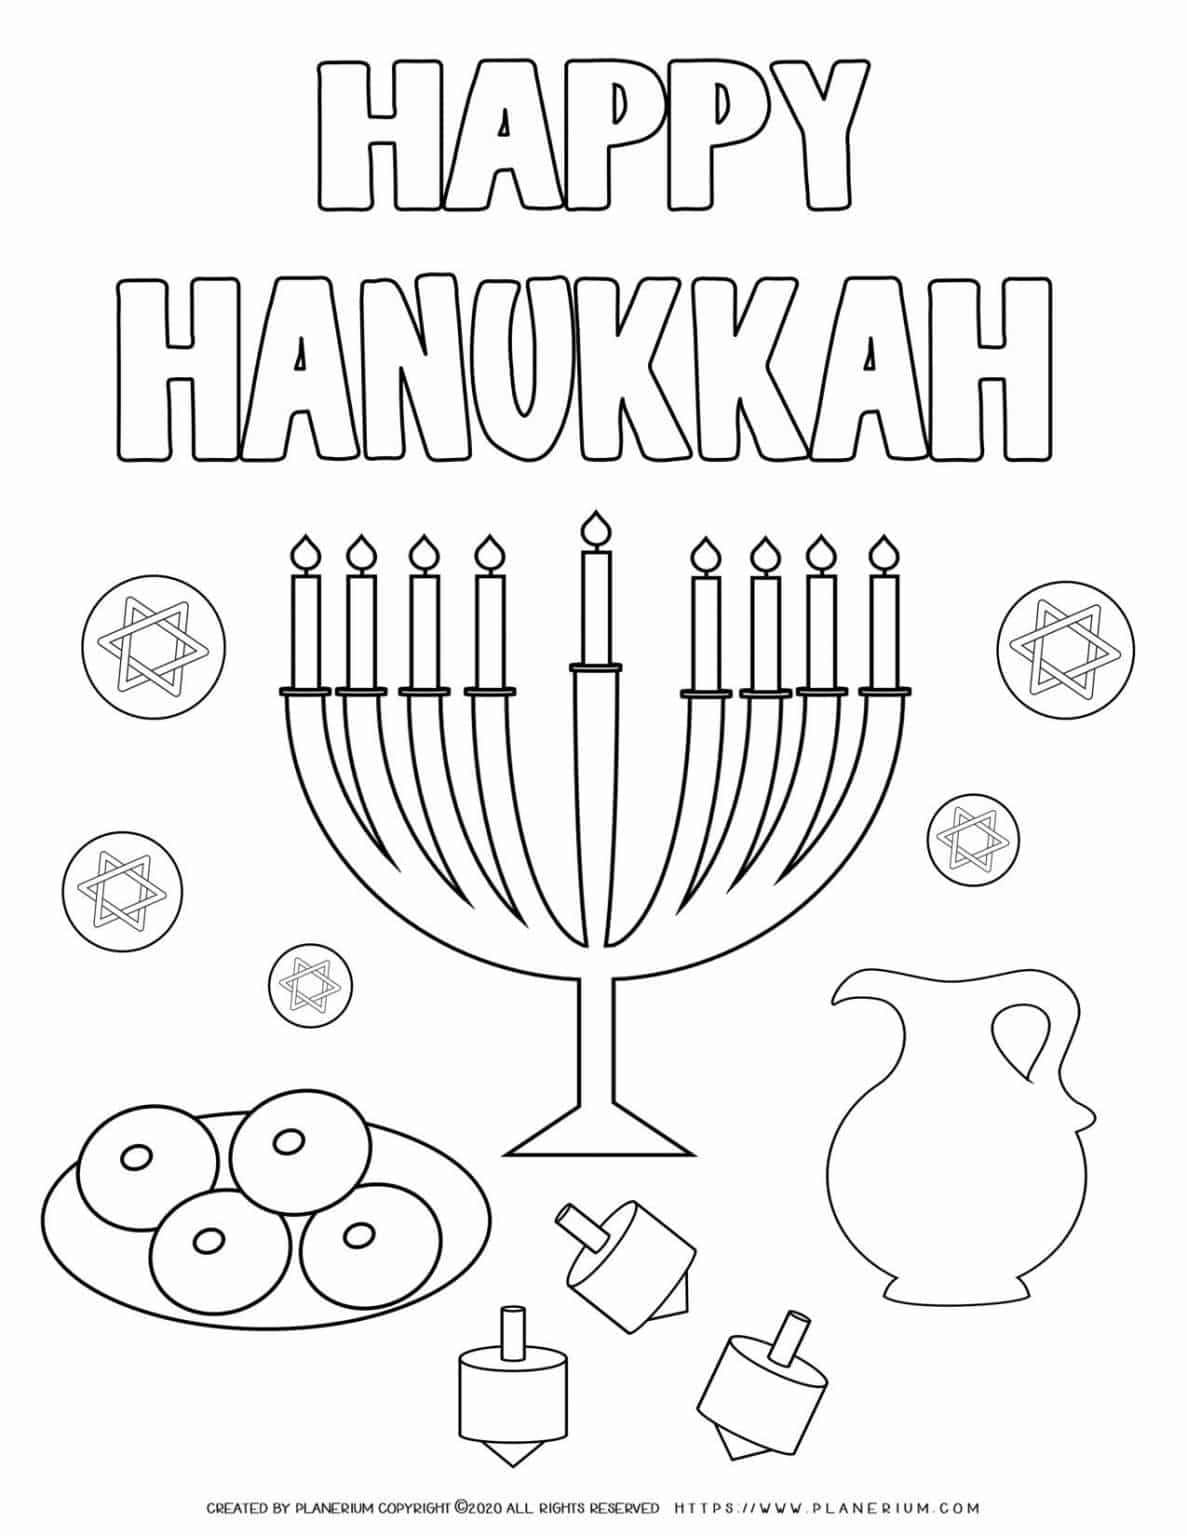 Happy Hanukkah Coloring page Free Printable Planerium